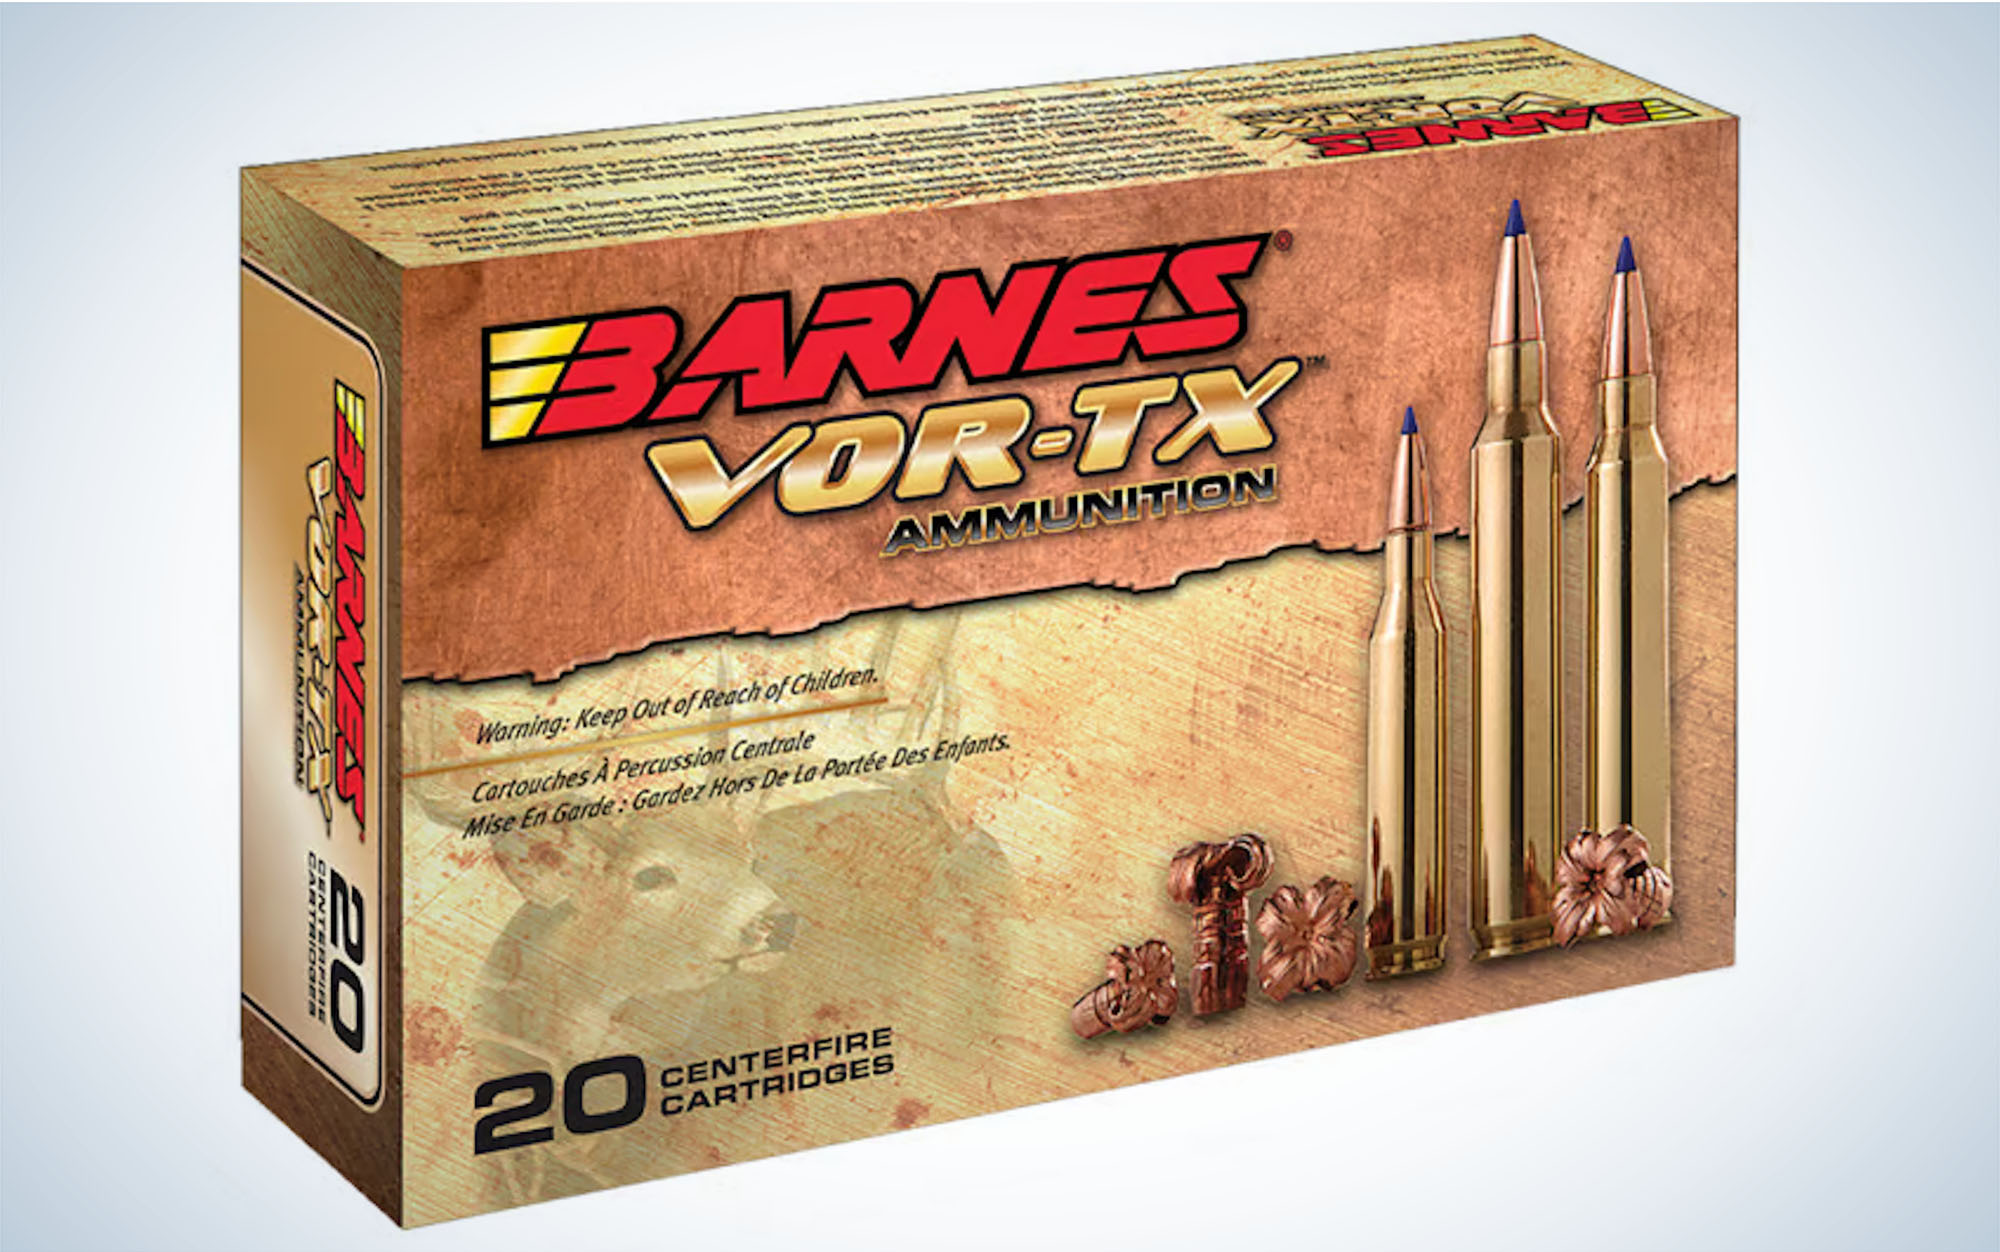 Barnes VOR-TX 150-grain